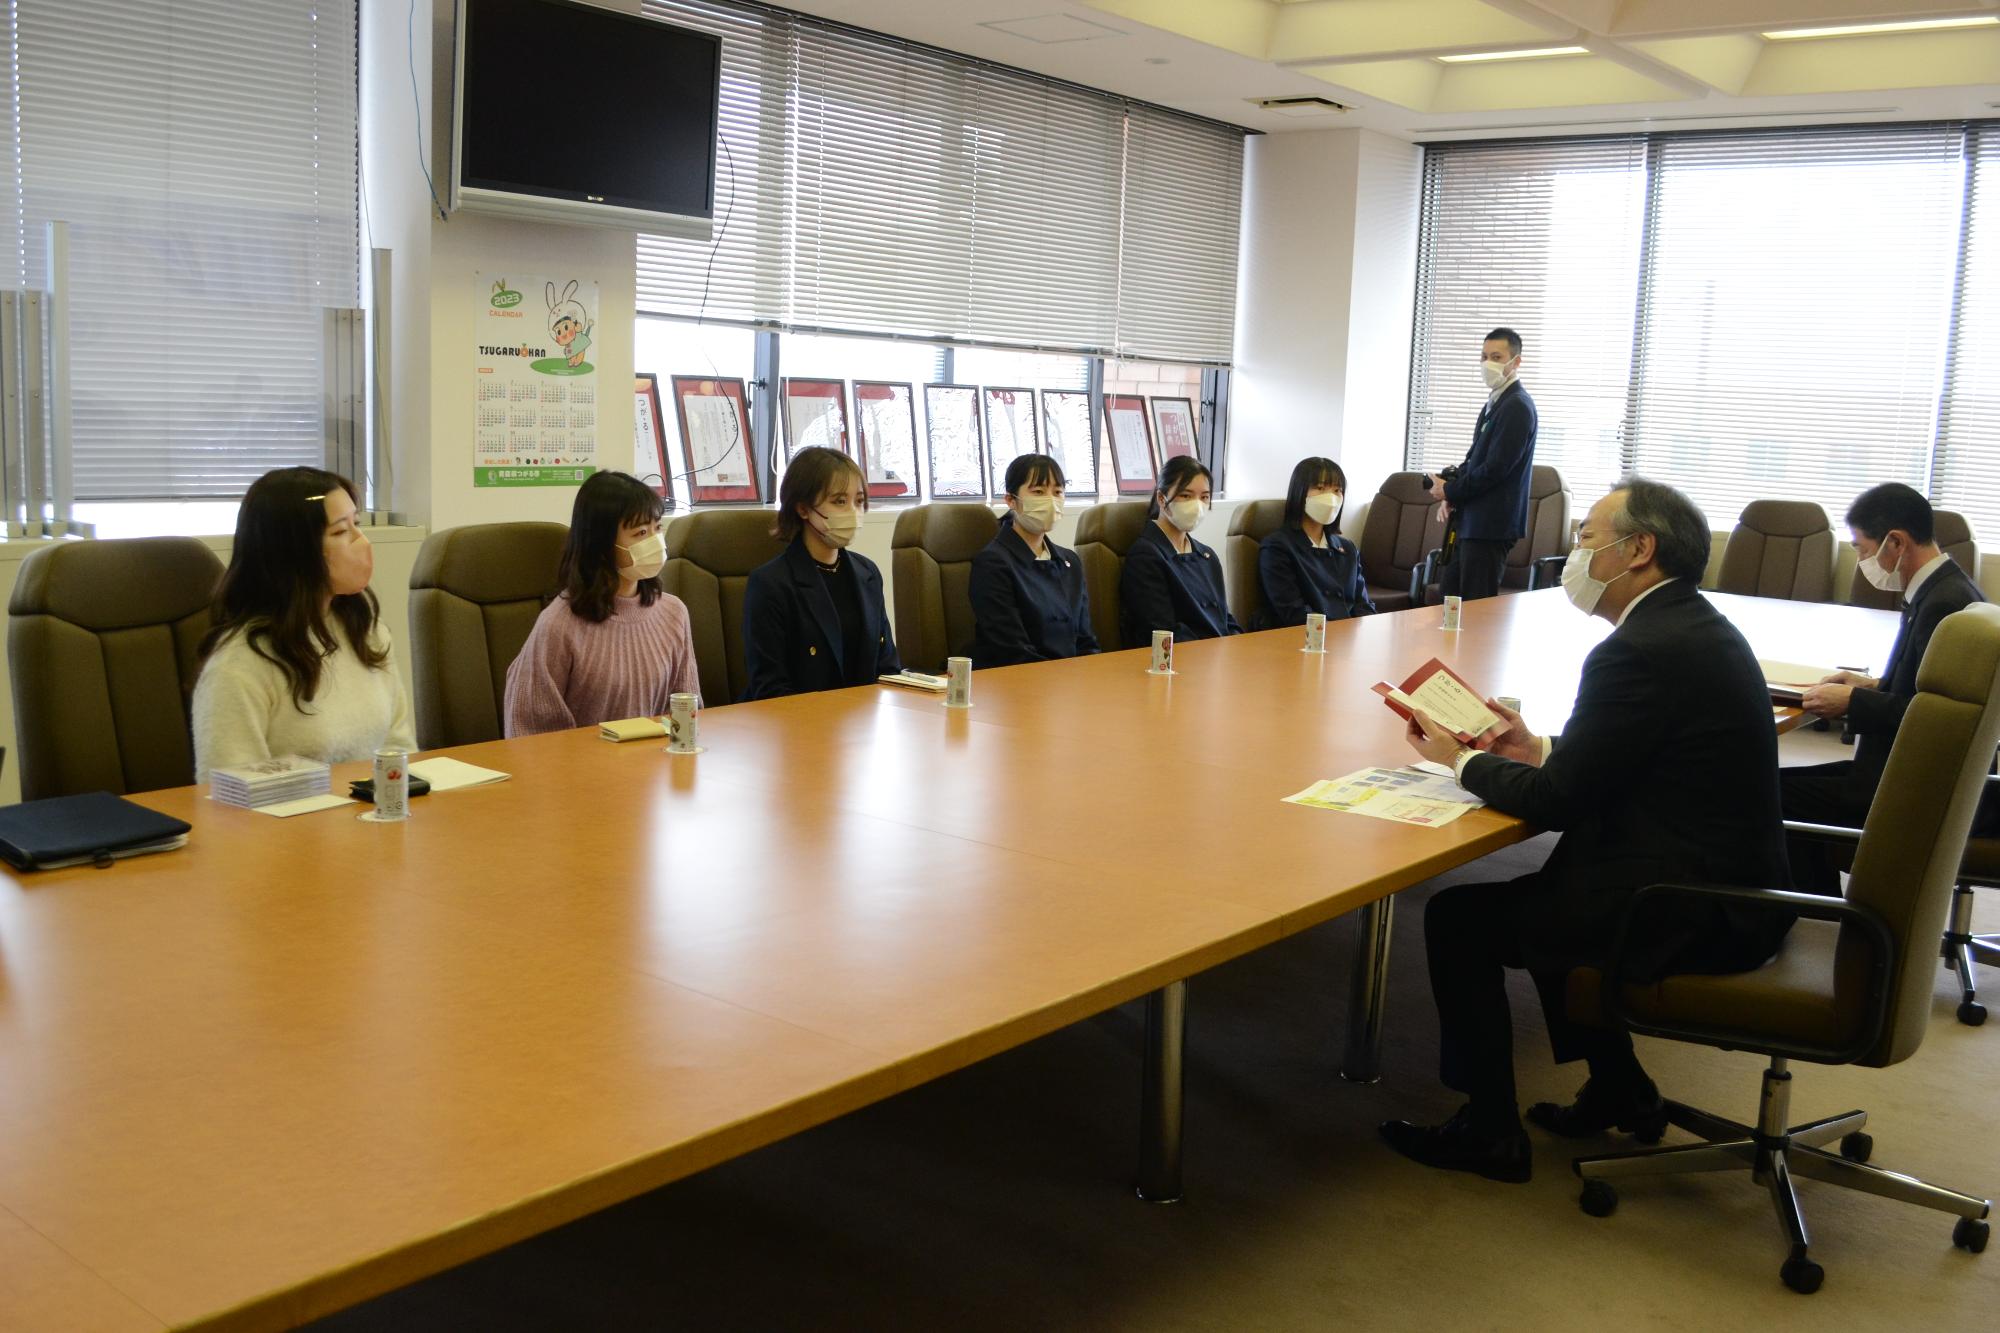 【新解釈つがる。辞典】編纂プロジェクトメンバー6名が市長を表敬訪問し横長の大きな机に市長と向かい合って座っている写真